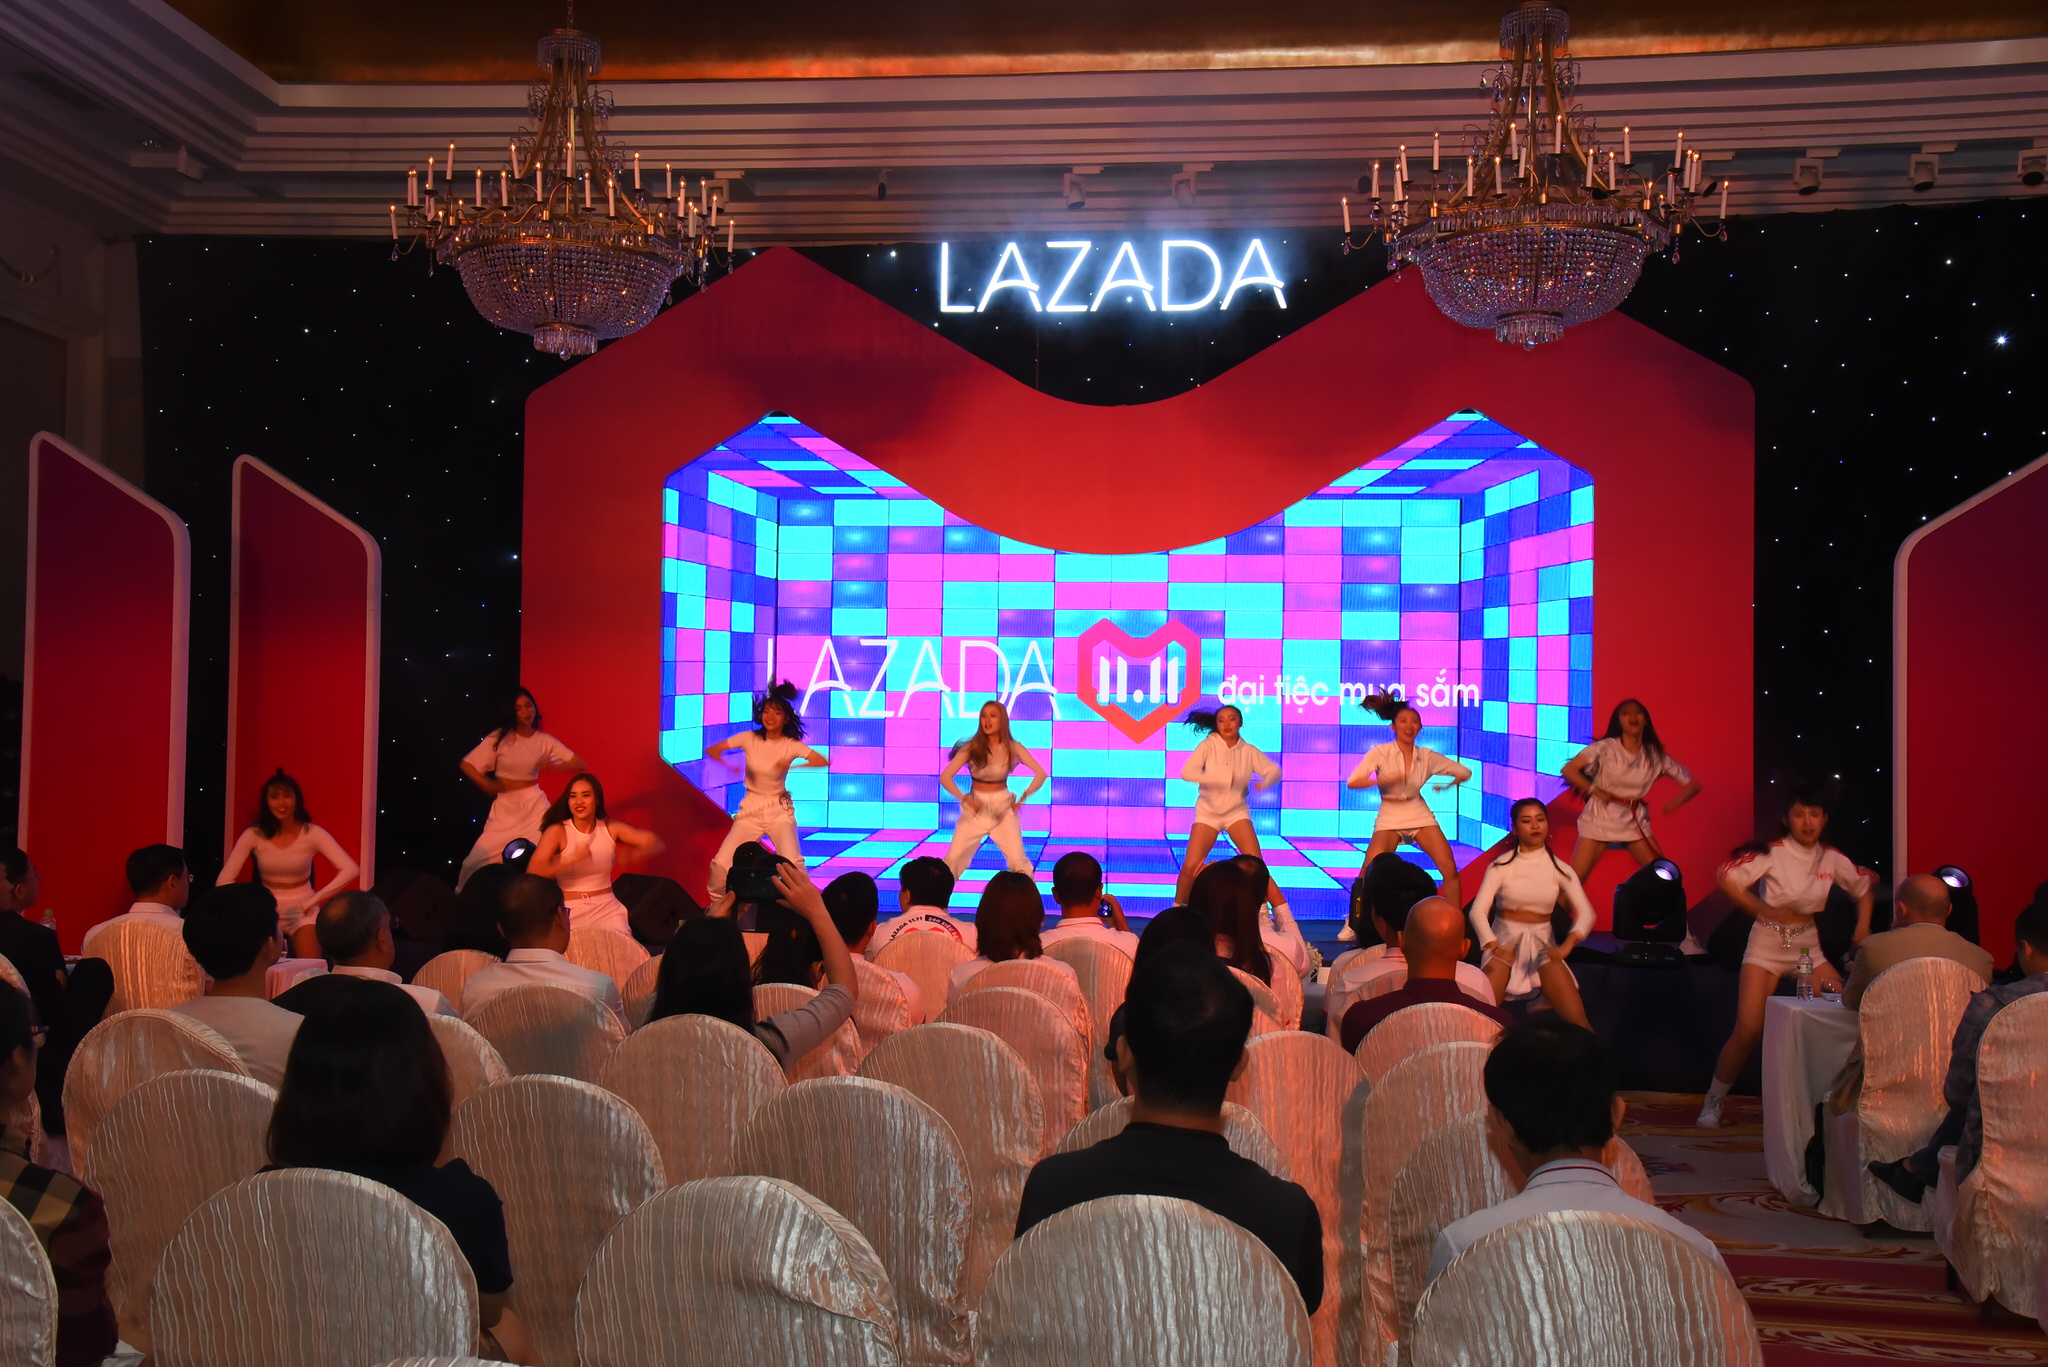 Lazada cam kết hỗ trợ cho tám triệu người khởi nghiệp cũng như các DNVVN đến năm 2030